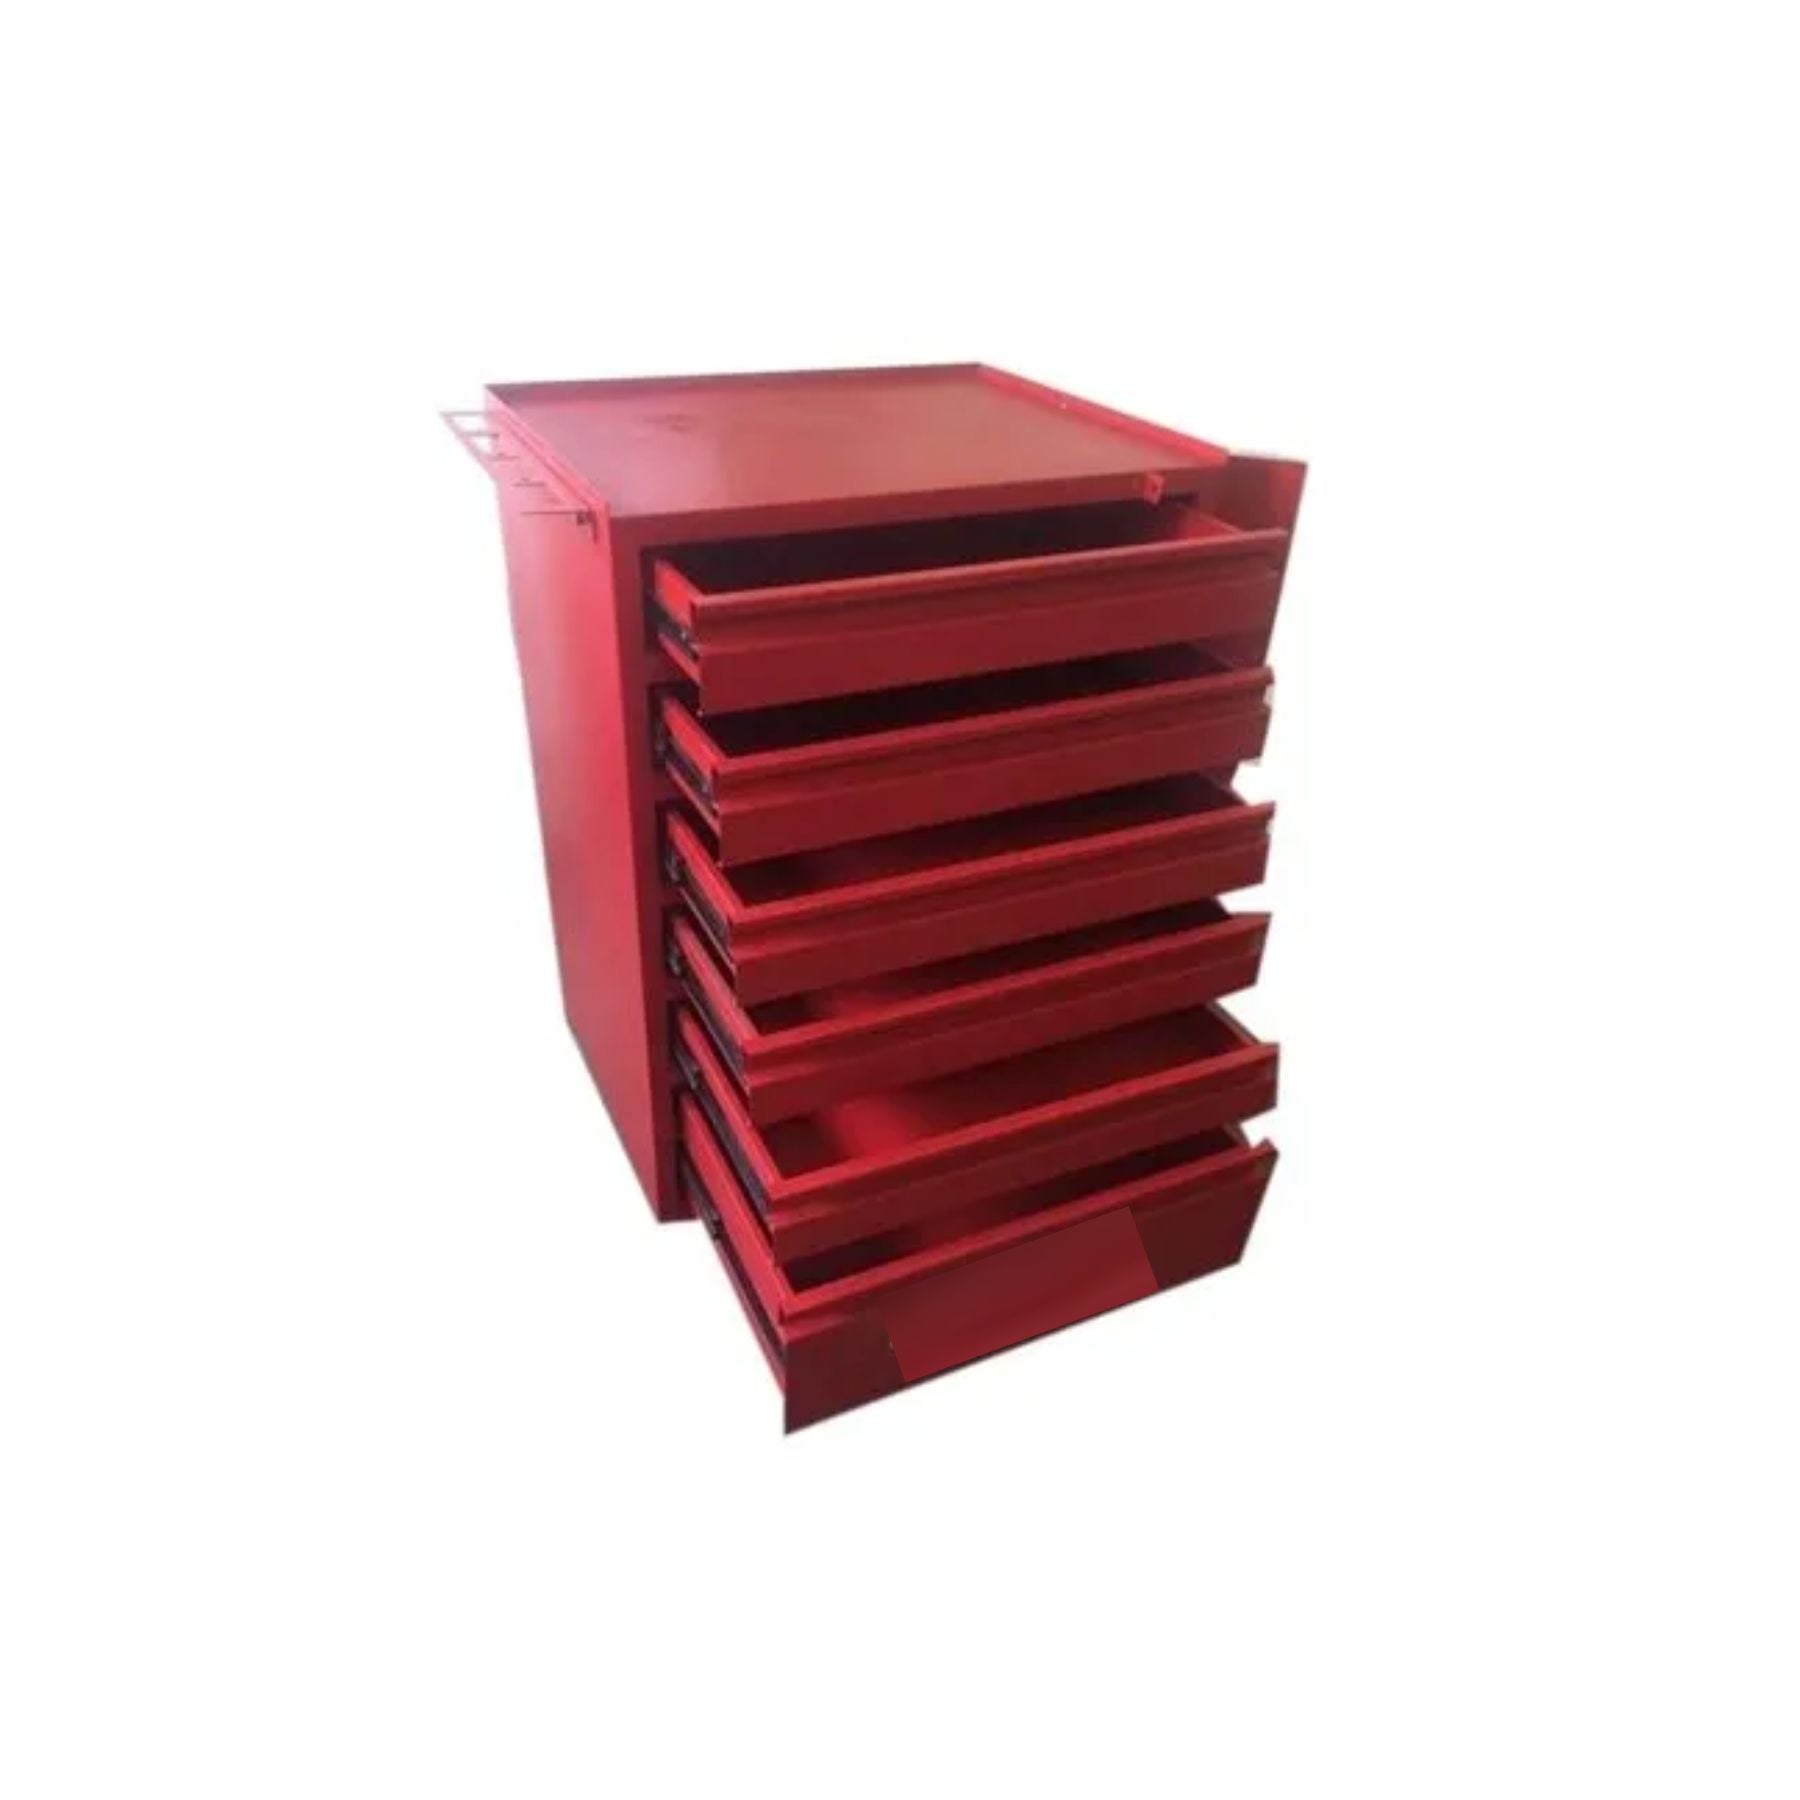 STST74424-8 Roller Cabinet 6 Drawer Red